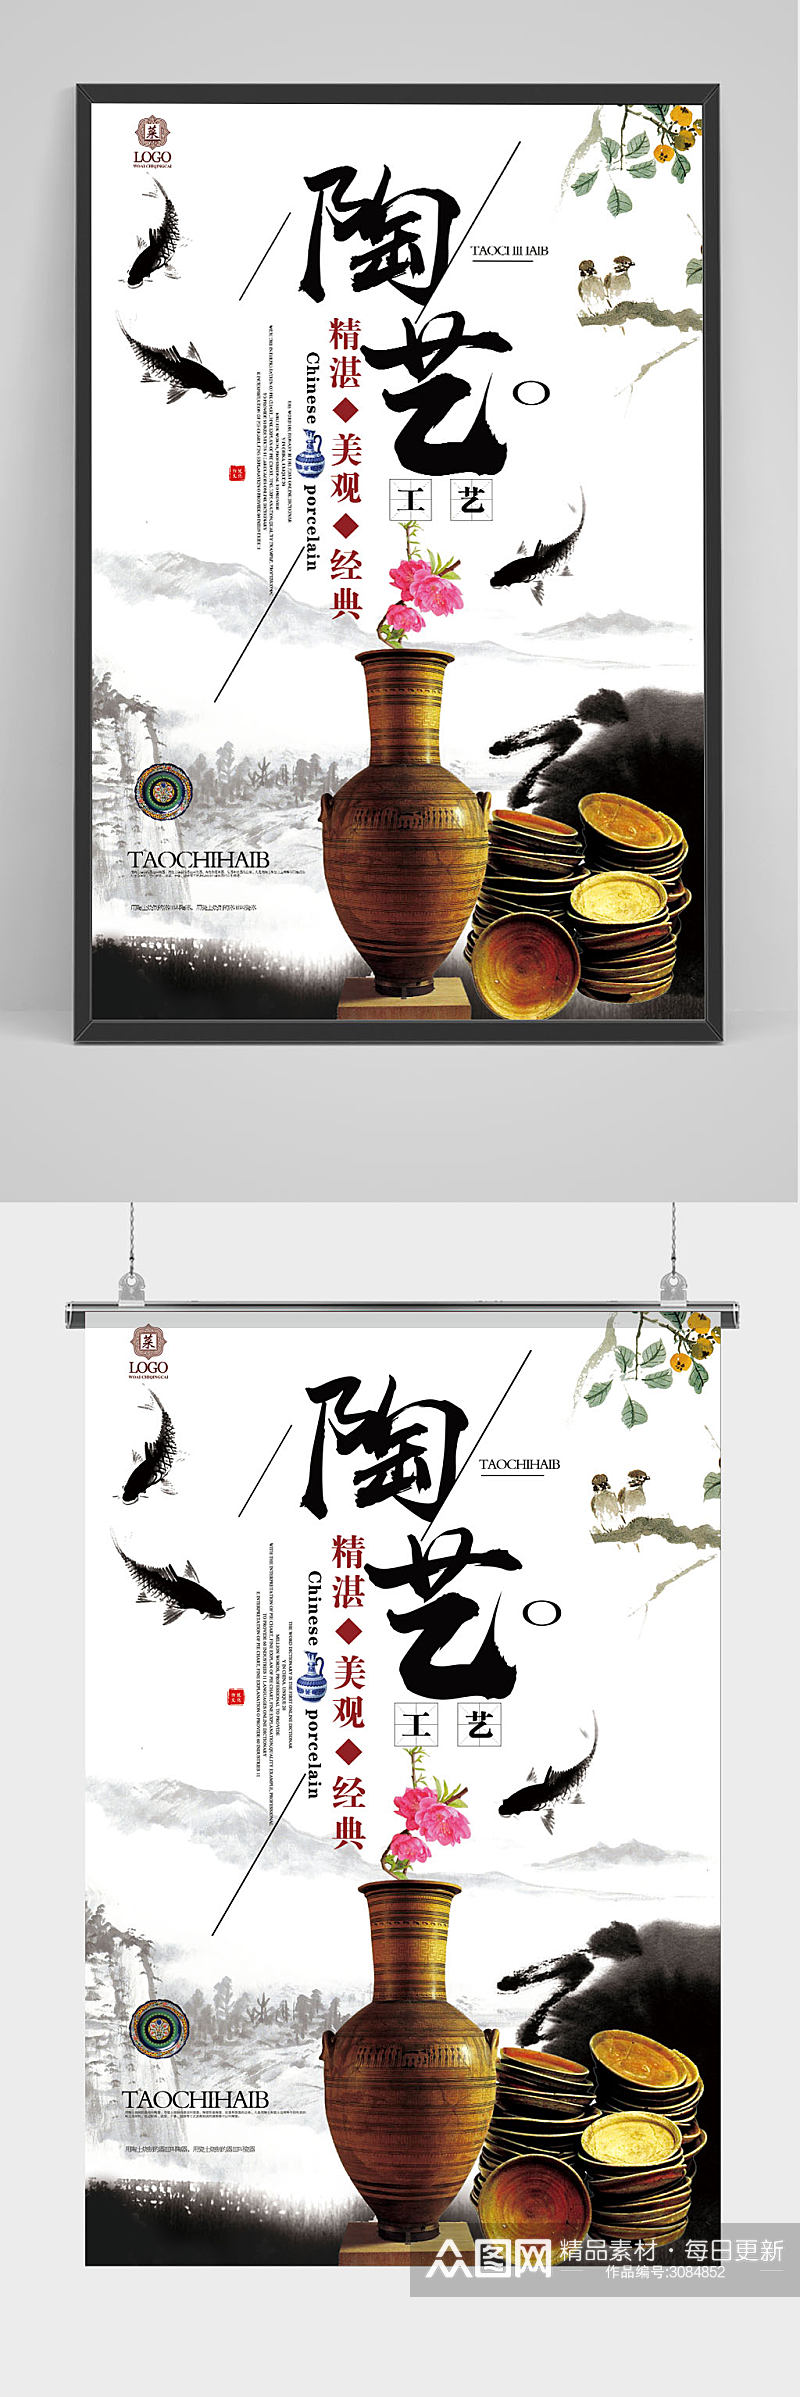 中国水墨风陶艺工匠宣传海报素材